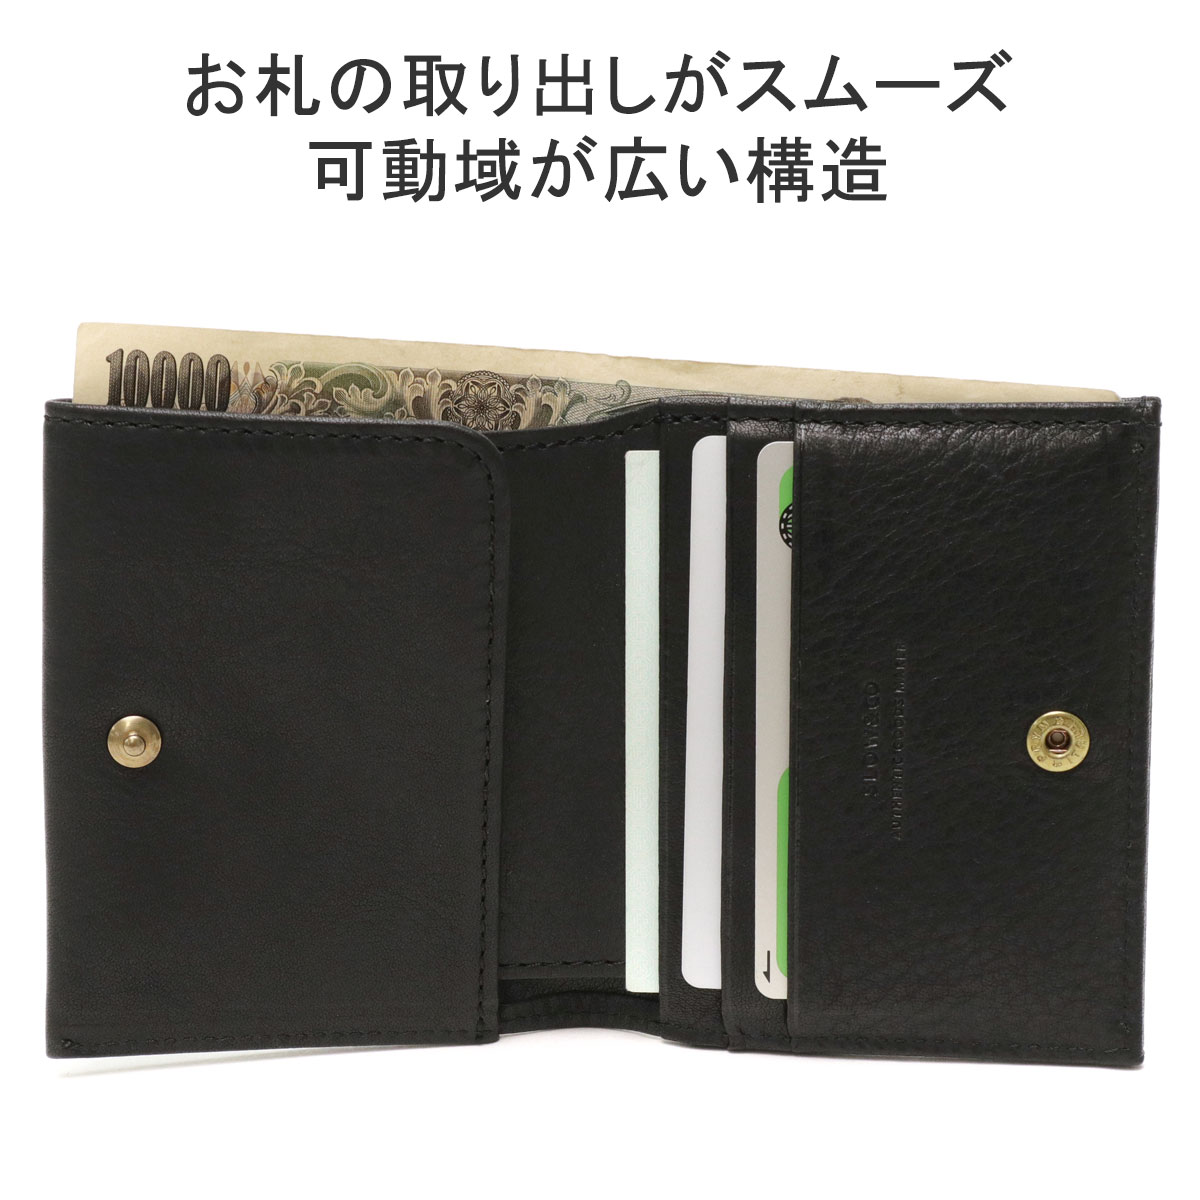 最大32%☆6/9限定 スロウ 二つ折り財布 SLOW bono smart mini wallet 